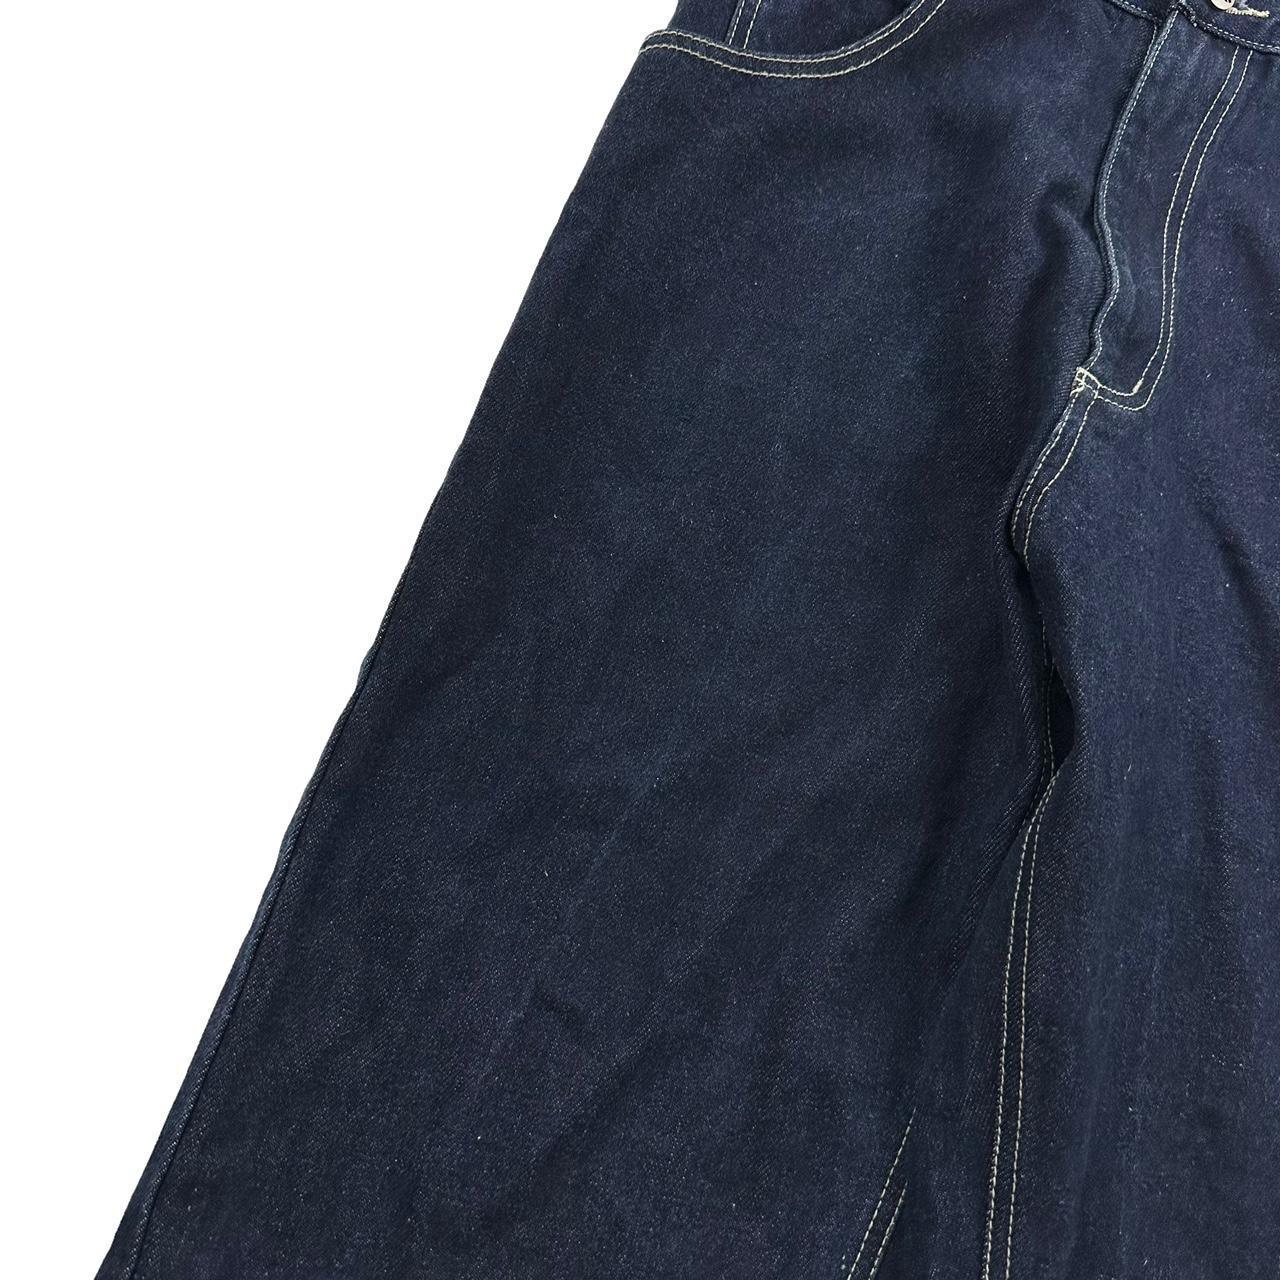 Vintage Geisha Japanese denim jeans W30 - Known Source